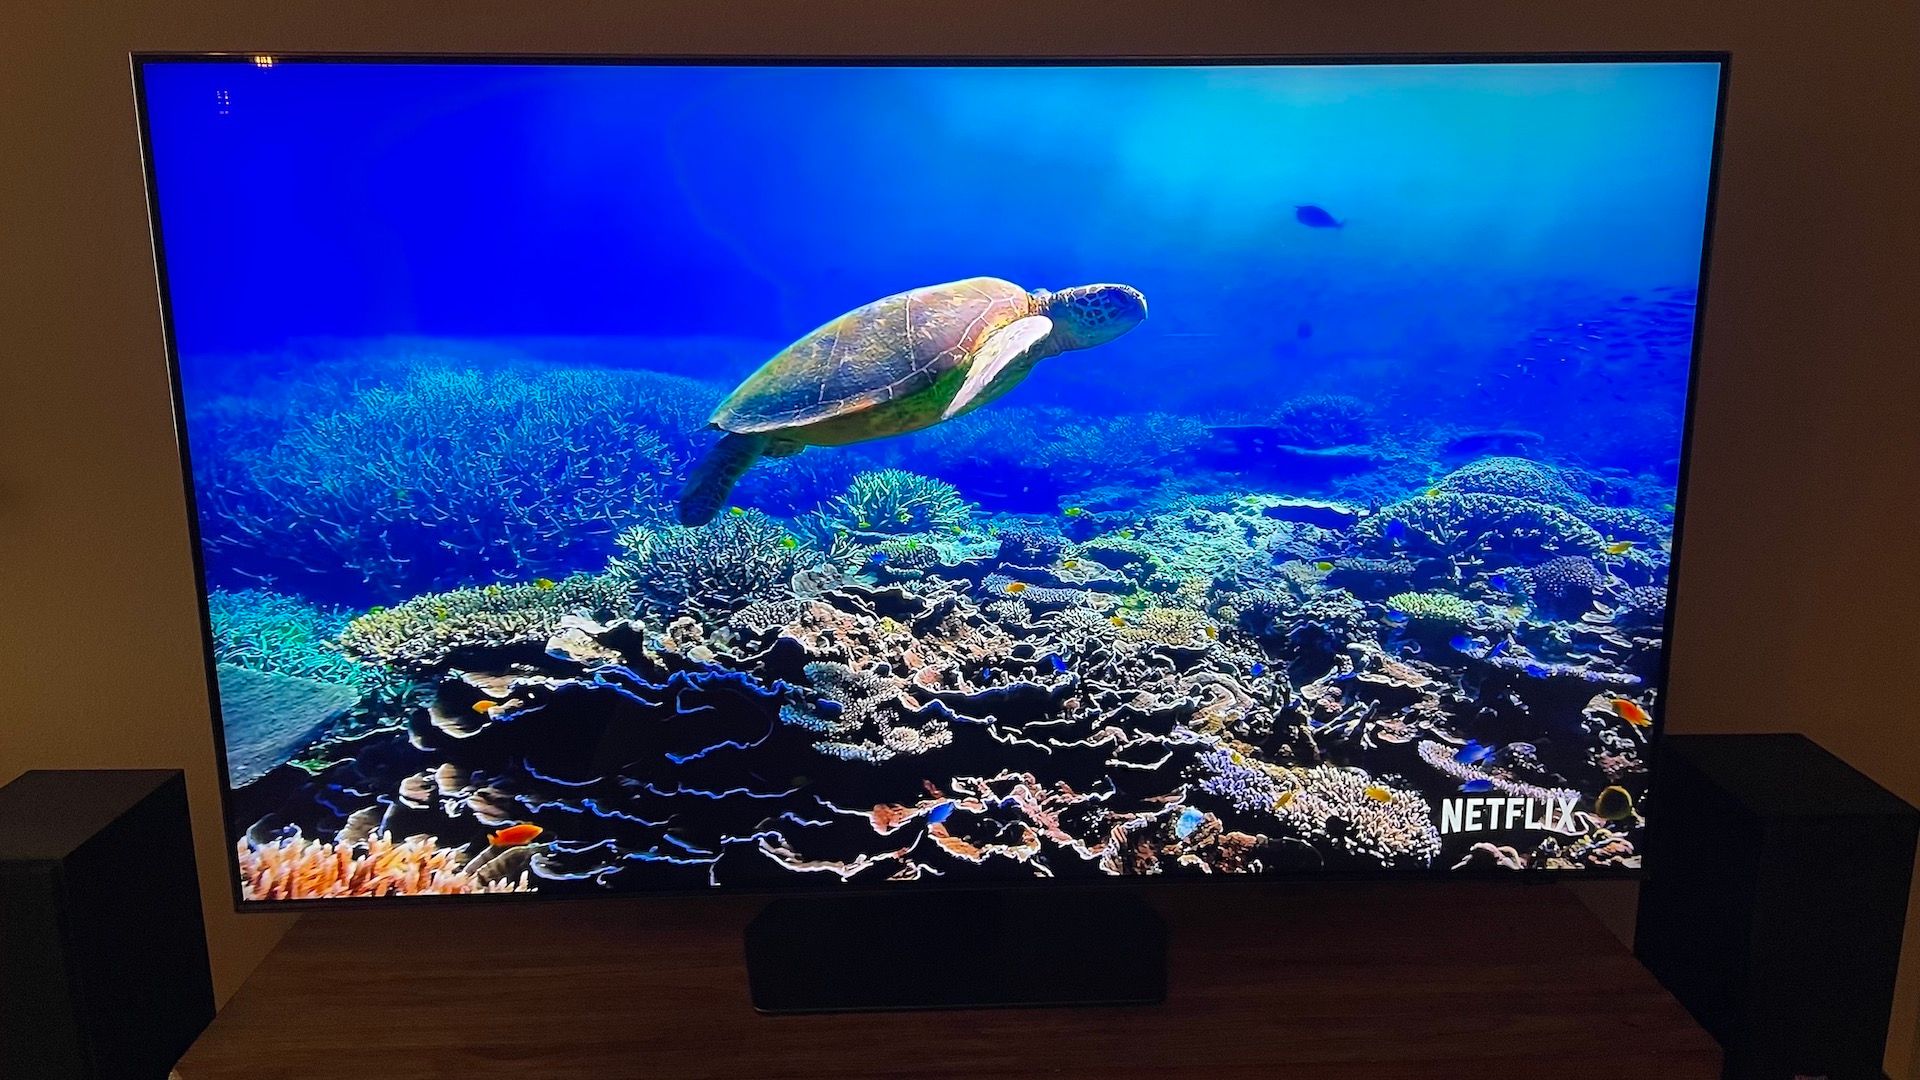 Uma foto de uma tartaruga nadando no Samsung QN90C de 55 polegadas.